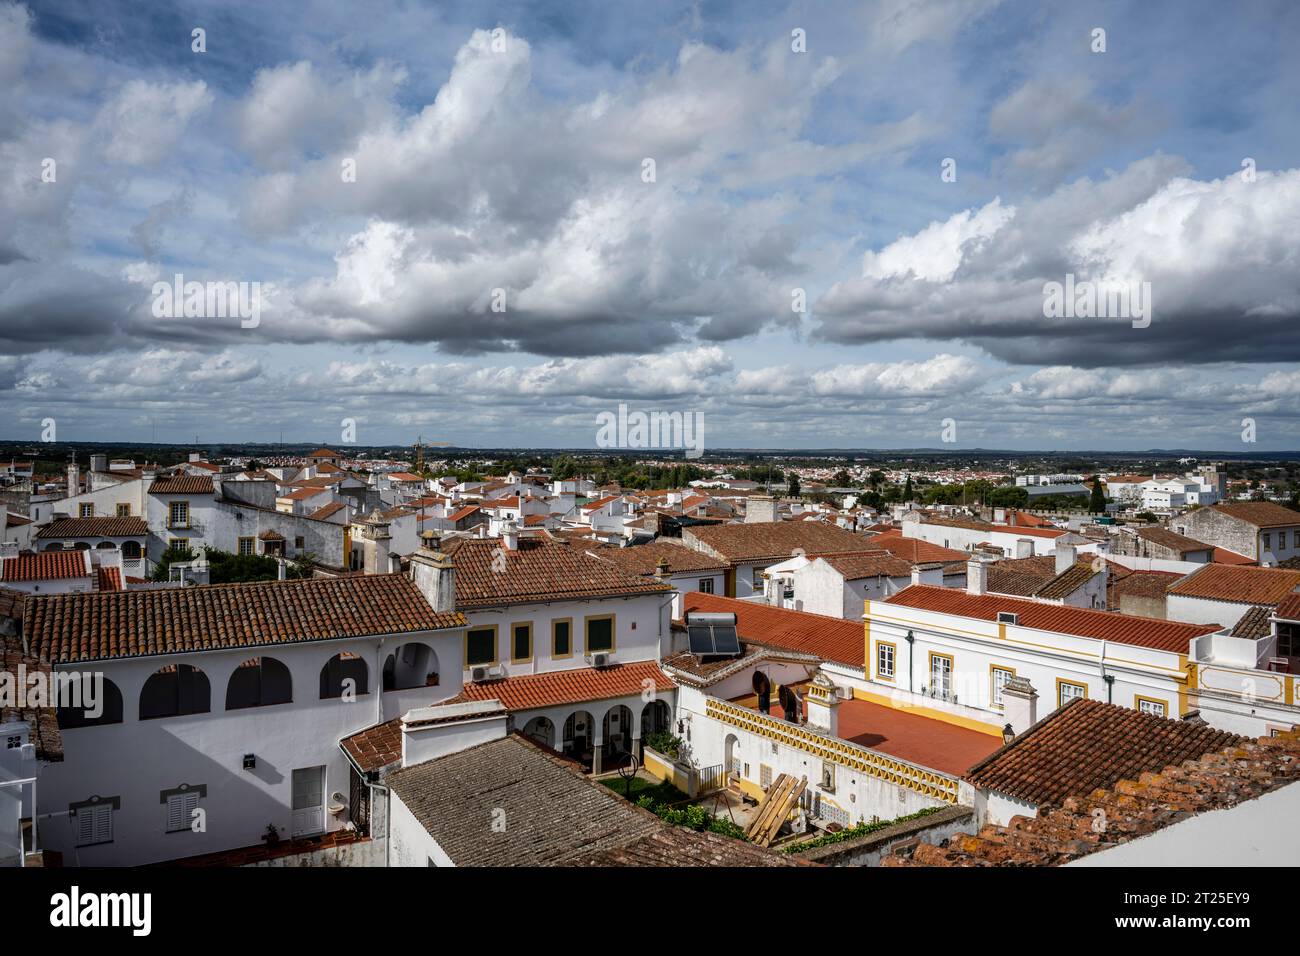 Toits et paysage urbain de la vieille ville d'Evora, Alentejo, Portugal Banque D'Images